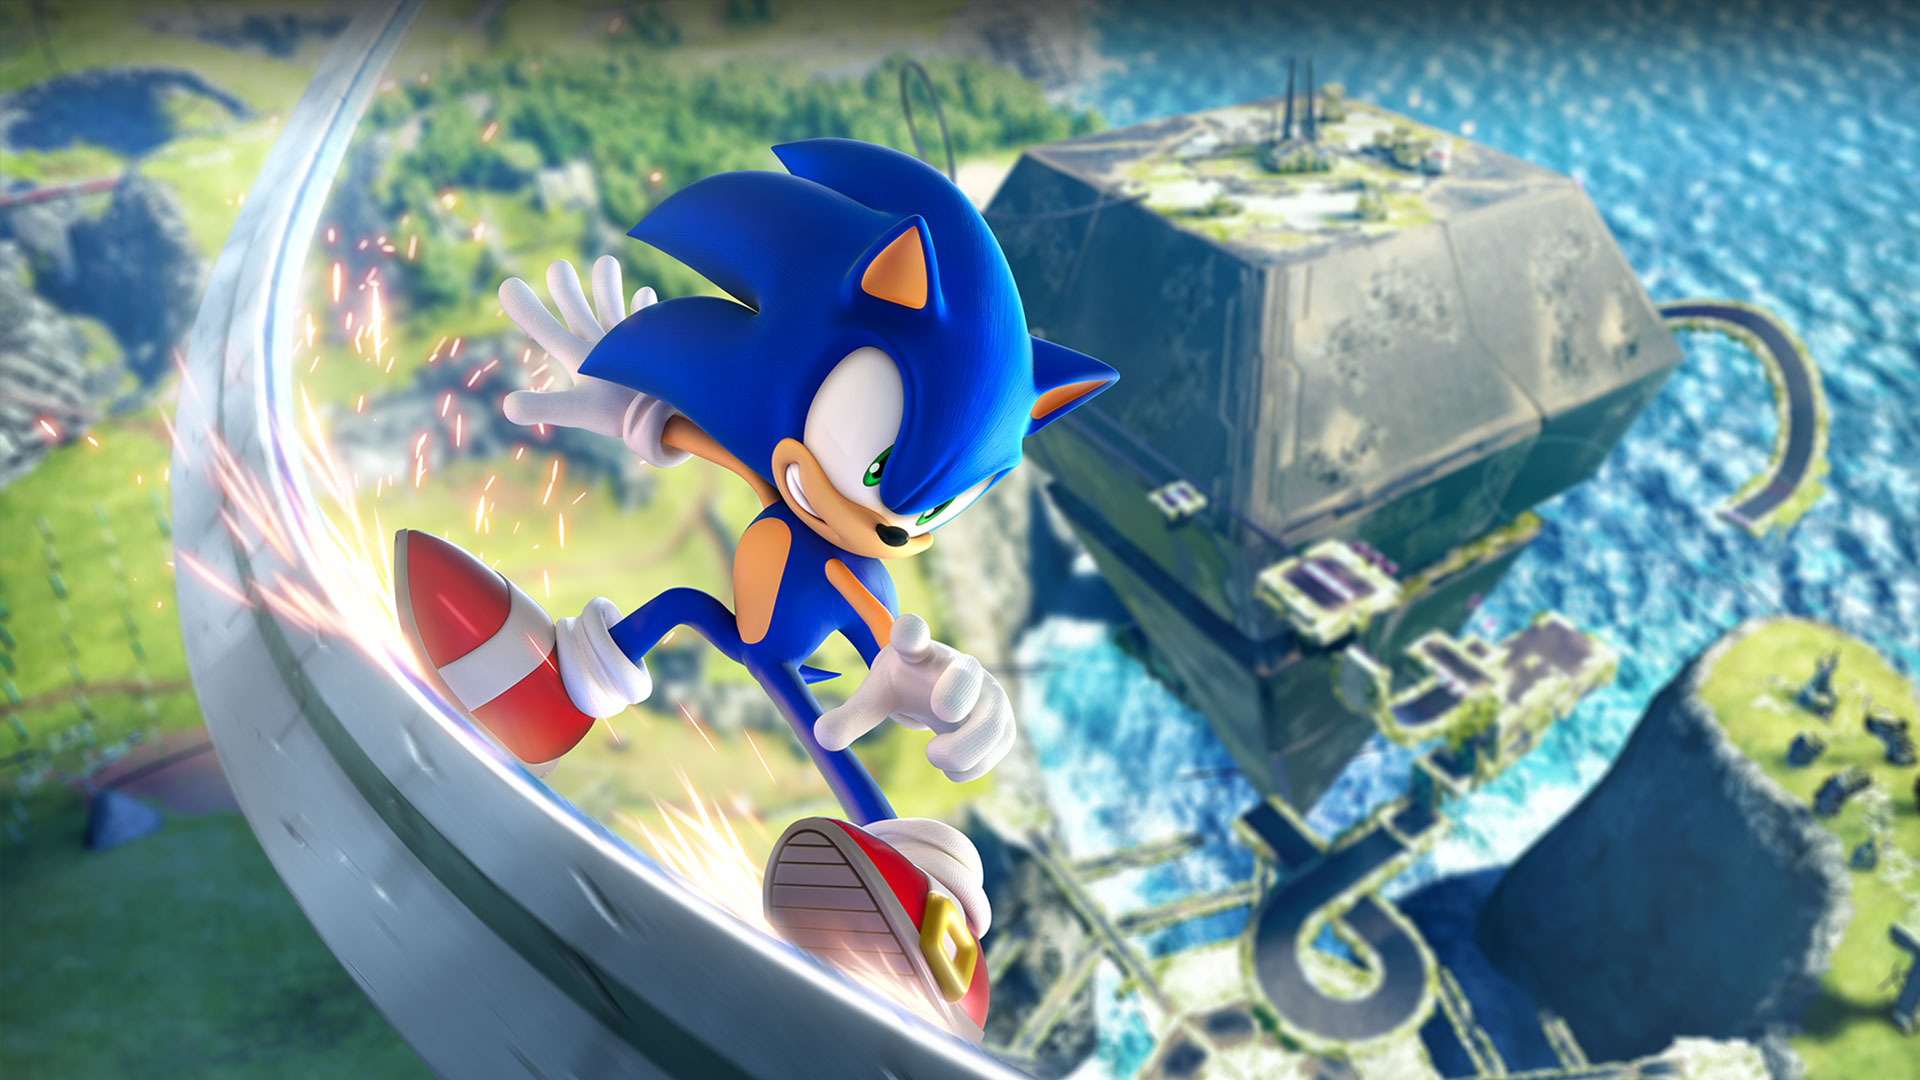 Sonic sklir på en skinne i høy hastighet, langt over den grønne sonen.